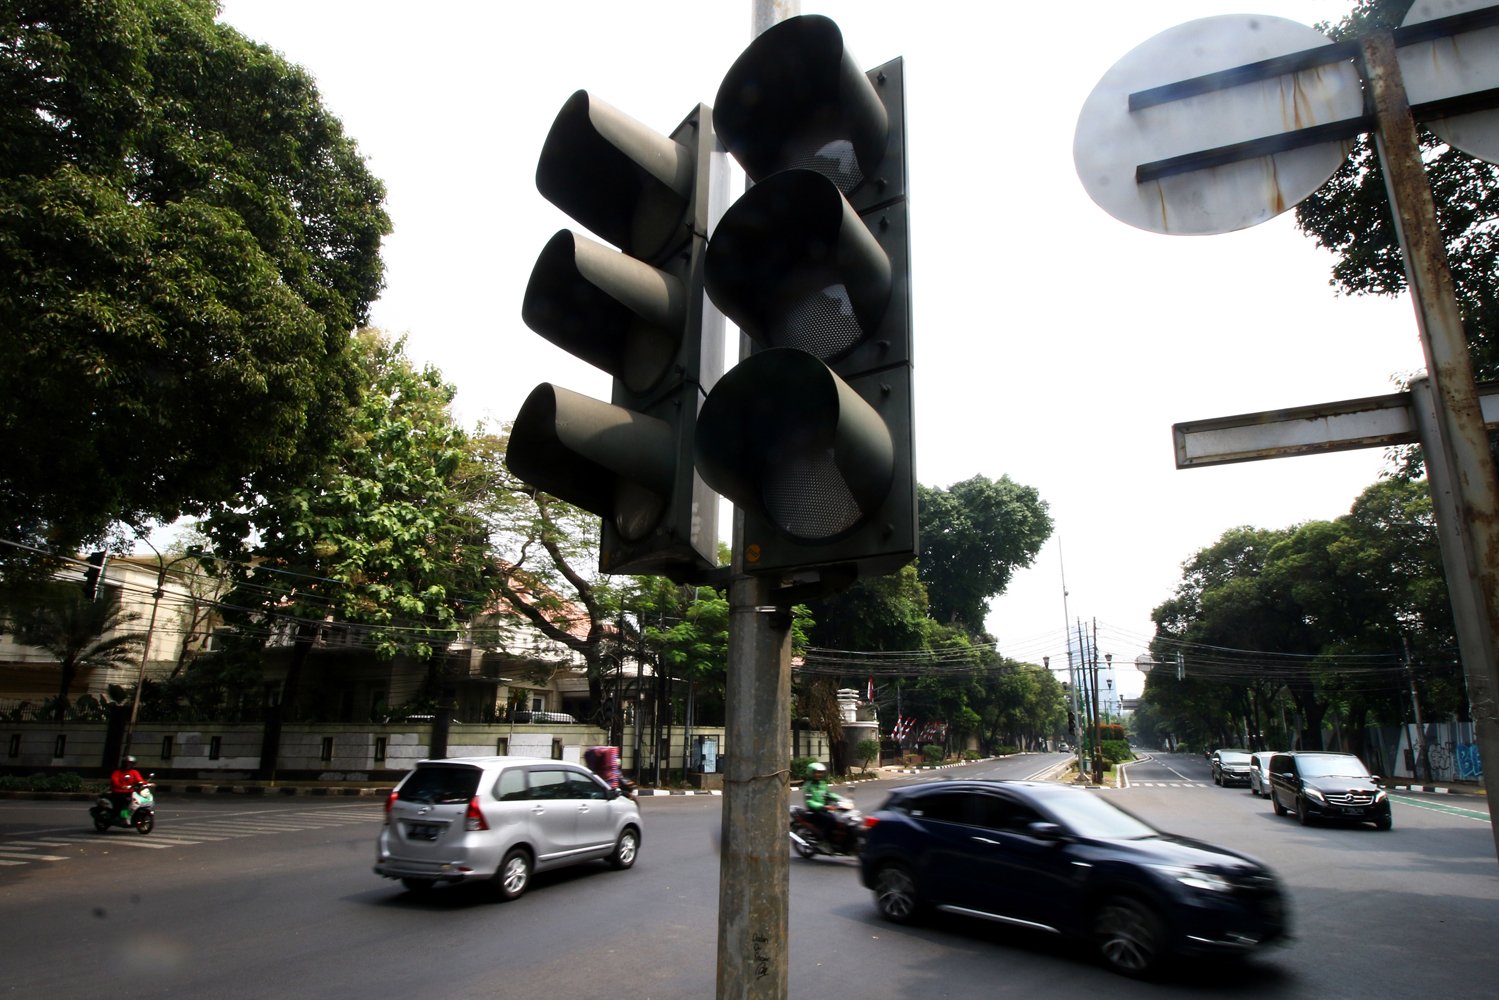 Pengendara melintas di dekat lampu lalu lintas yang tidak berfungsi di Jalan Diponegoro, Jakarta, Senin (5/8/2019). Pemadaman listrik yang terjadi di wilayah Jabodetabek mengakibatkan sejumlah lampu pengatur lalu lintas tidak berfungsi. 